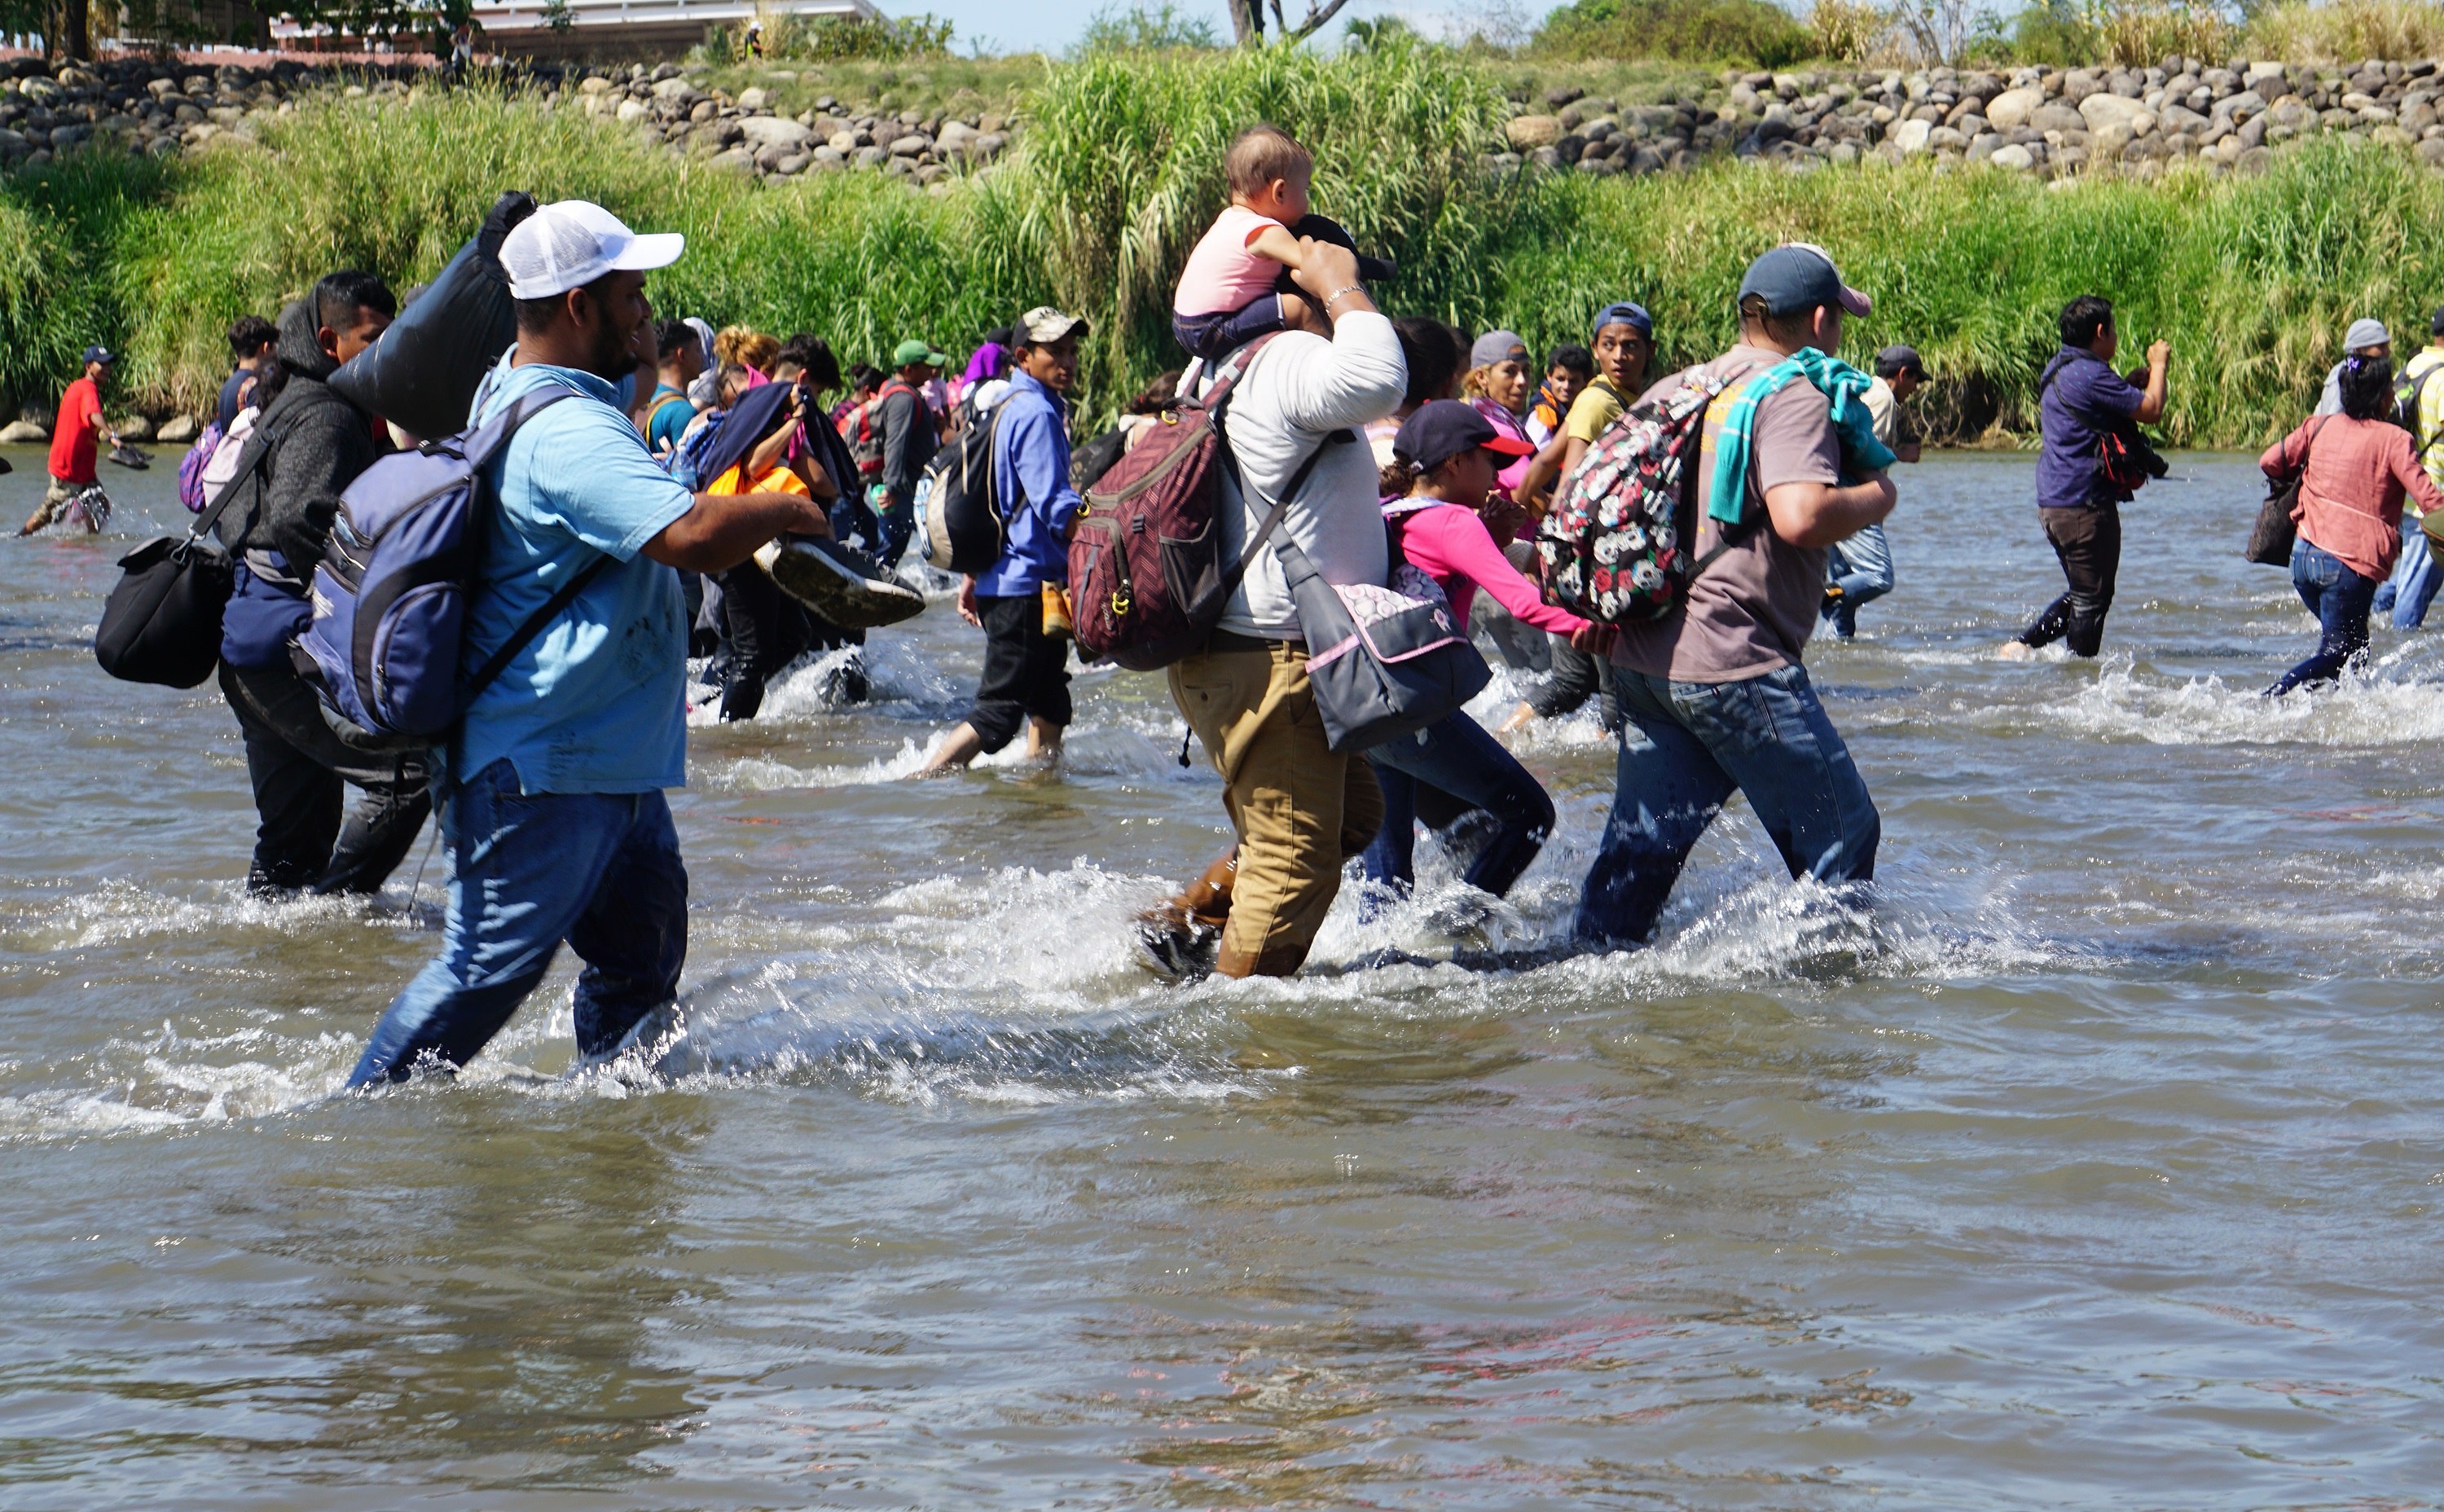 Caravana De Migrantes Ingresa A La Fuerza A México Por El Río Suchiate